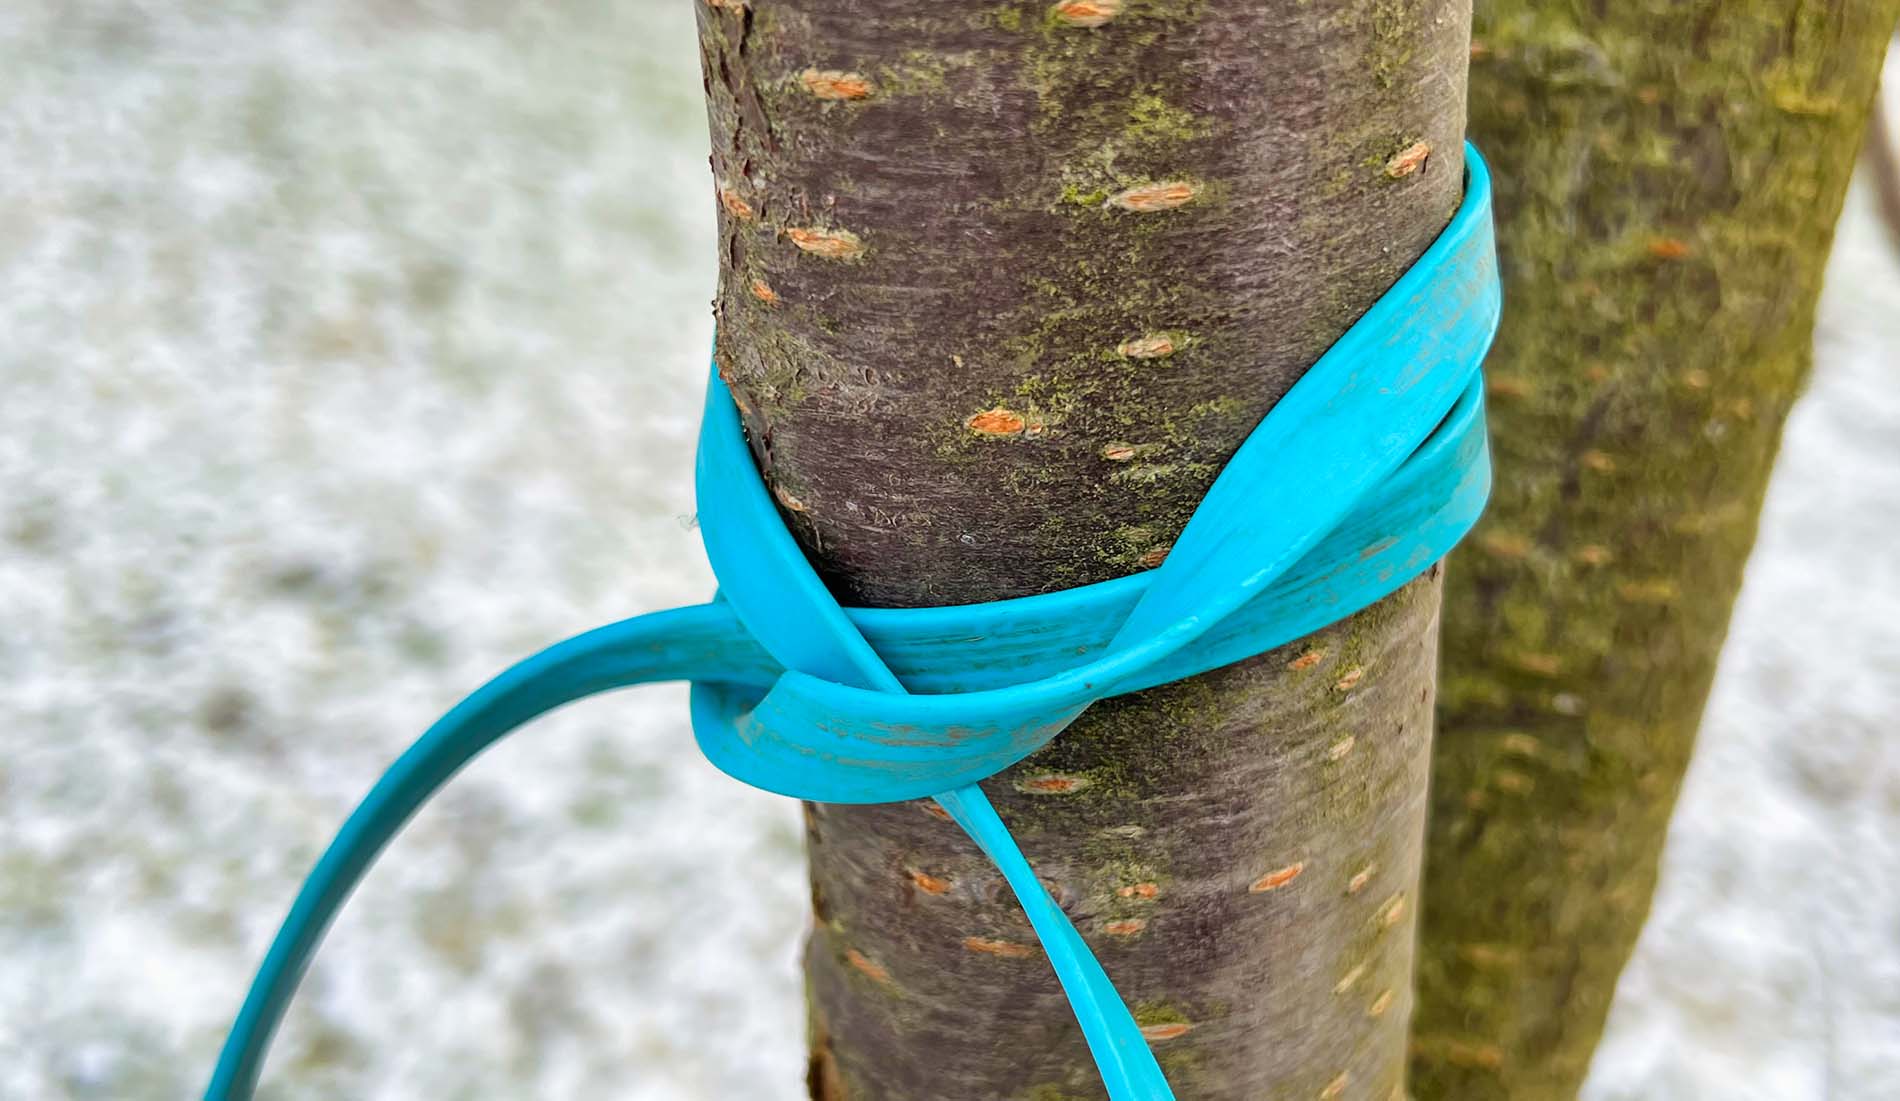 Der Mastwurf-Knoten ist sehr praktisch und schnell gelegt – auch wenn man die Hundeleine mal schnell an einem Baum befestigen muss (Foto: Sir Apfelot).